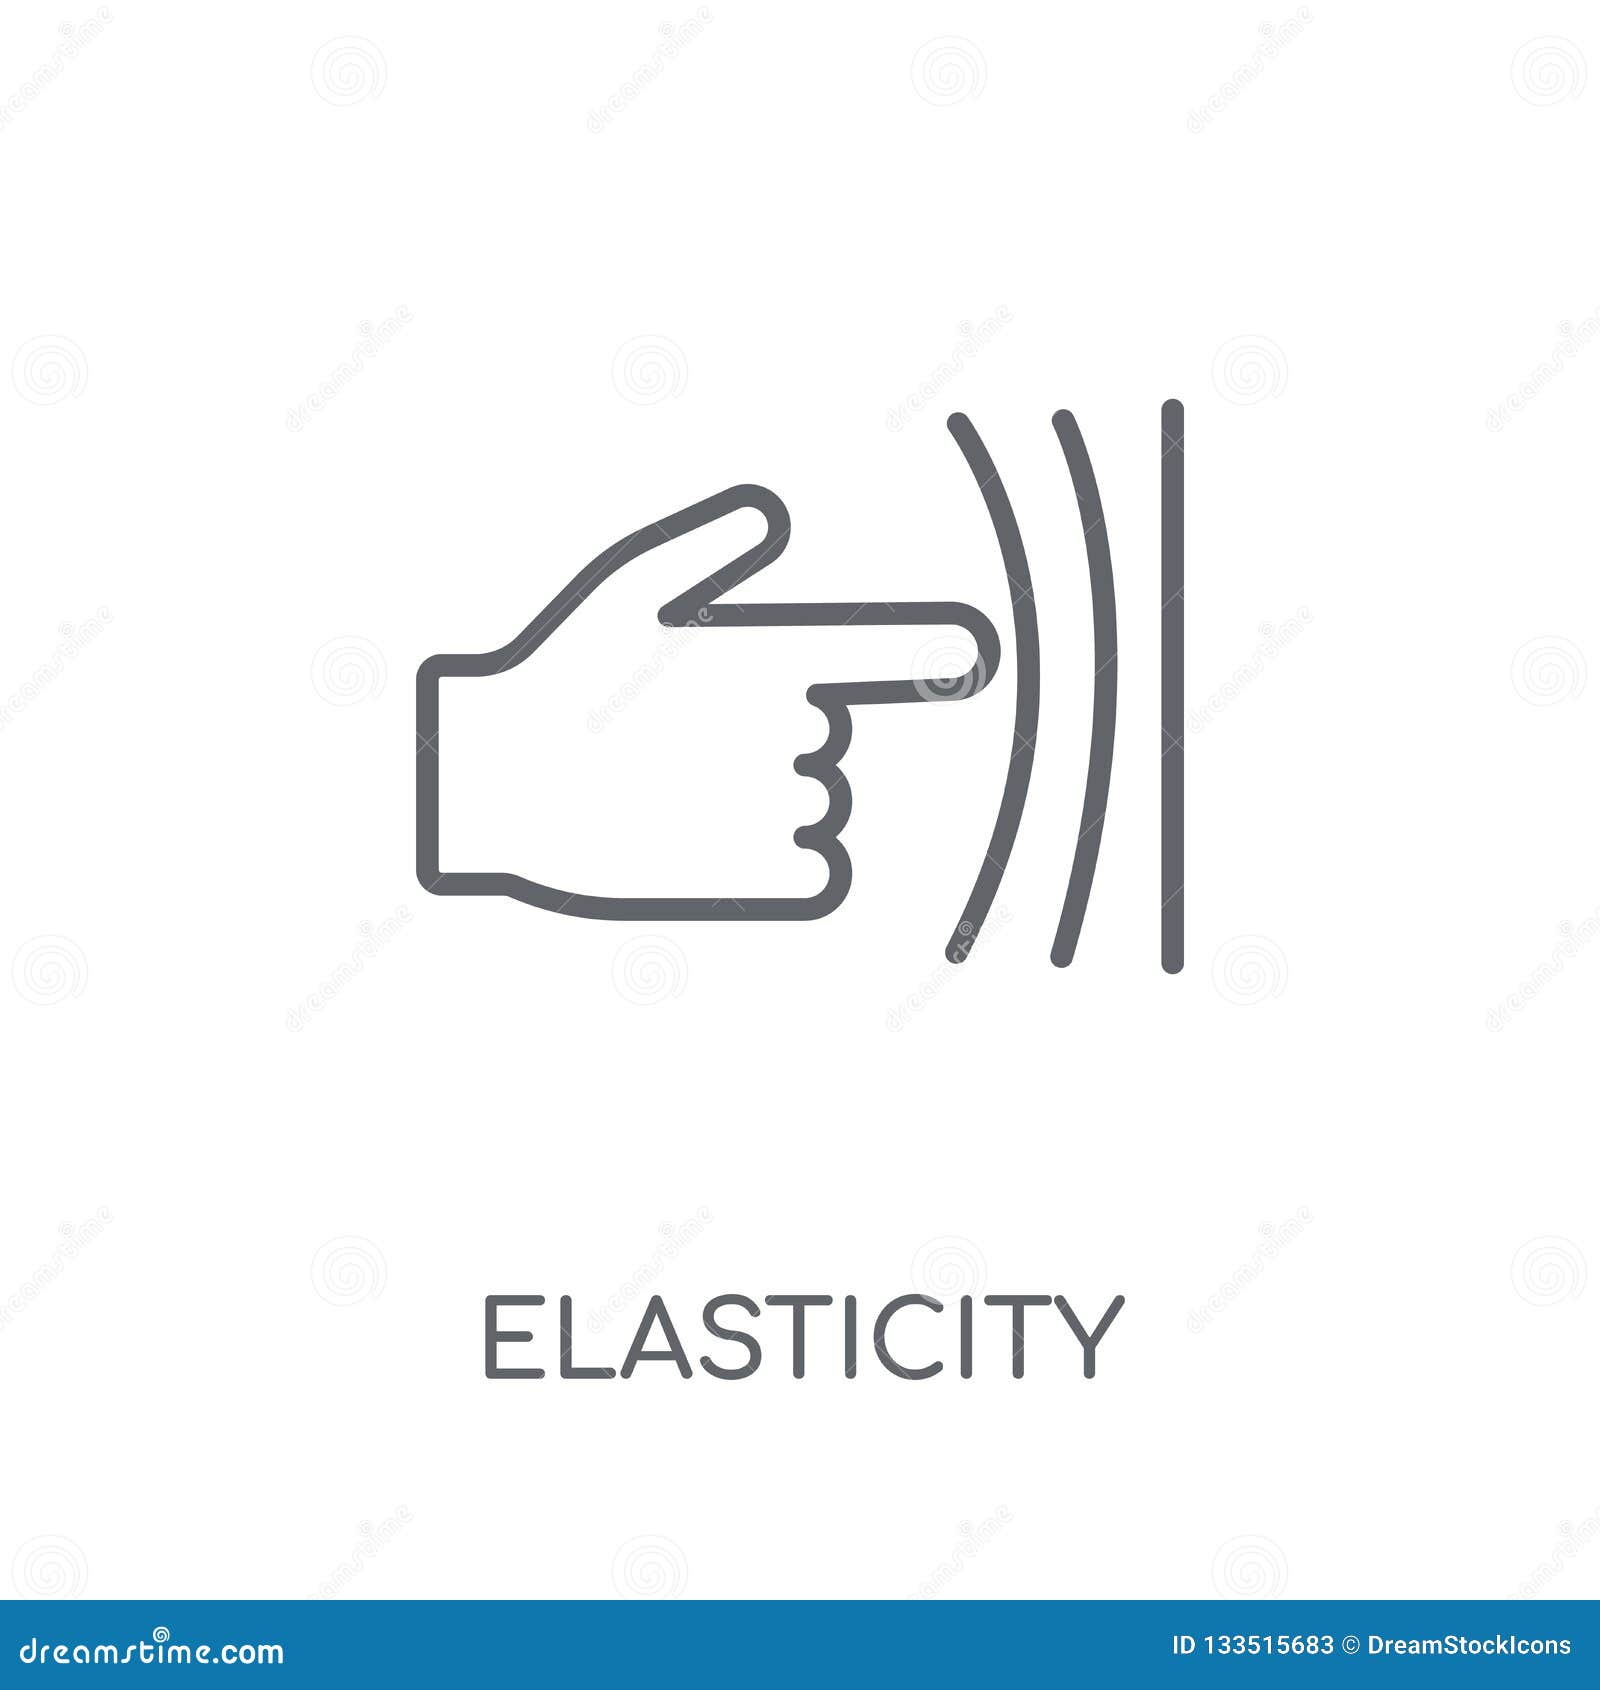 elasticity linear icon. modern outline elasticity logo concept o